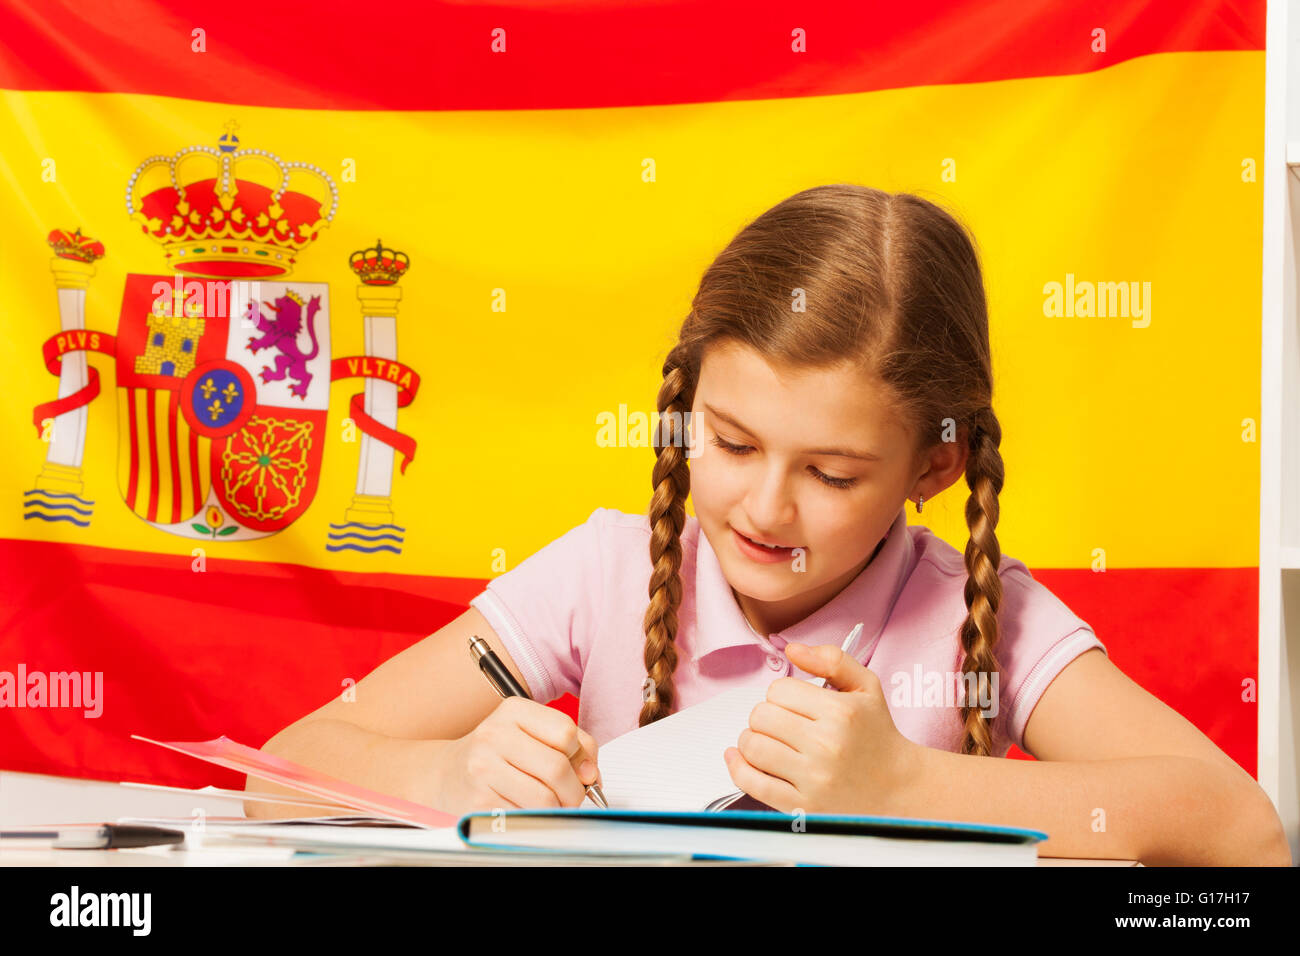 В школе испанский язык изучают 90 учащихся. Изучение испанского. Урок испанского дети. Испанский язык для детей. Дети учат испанский.